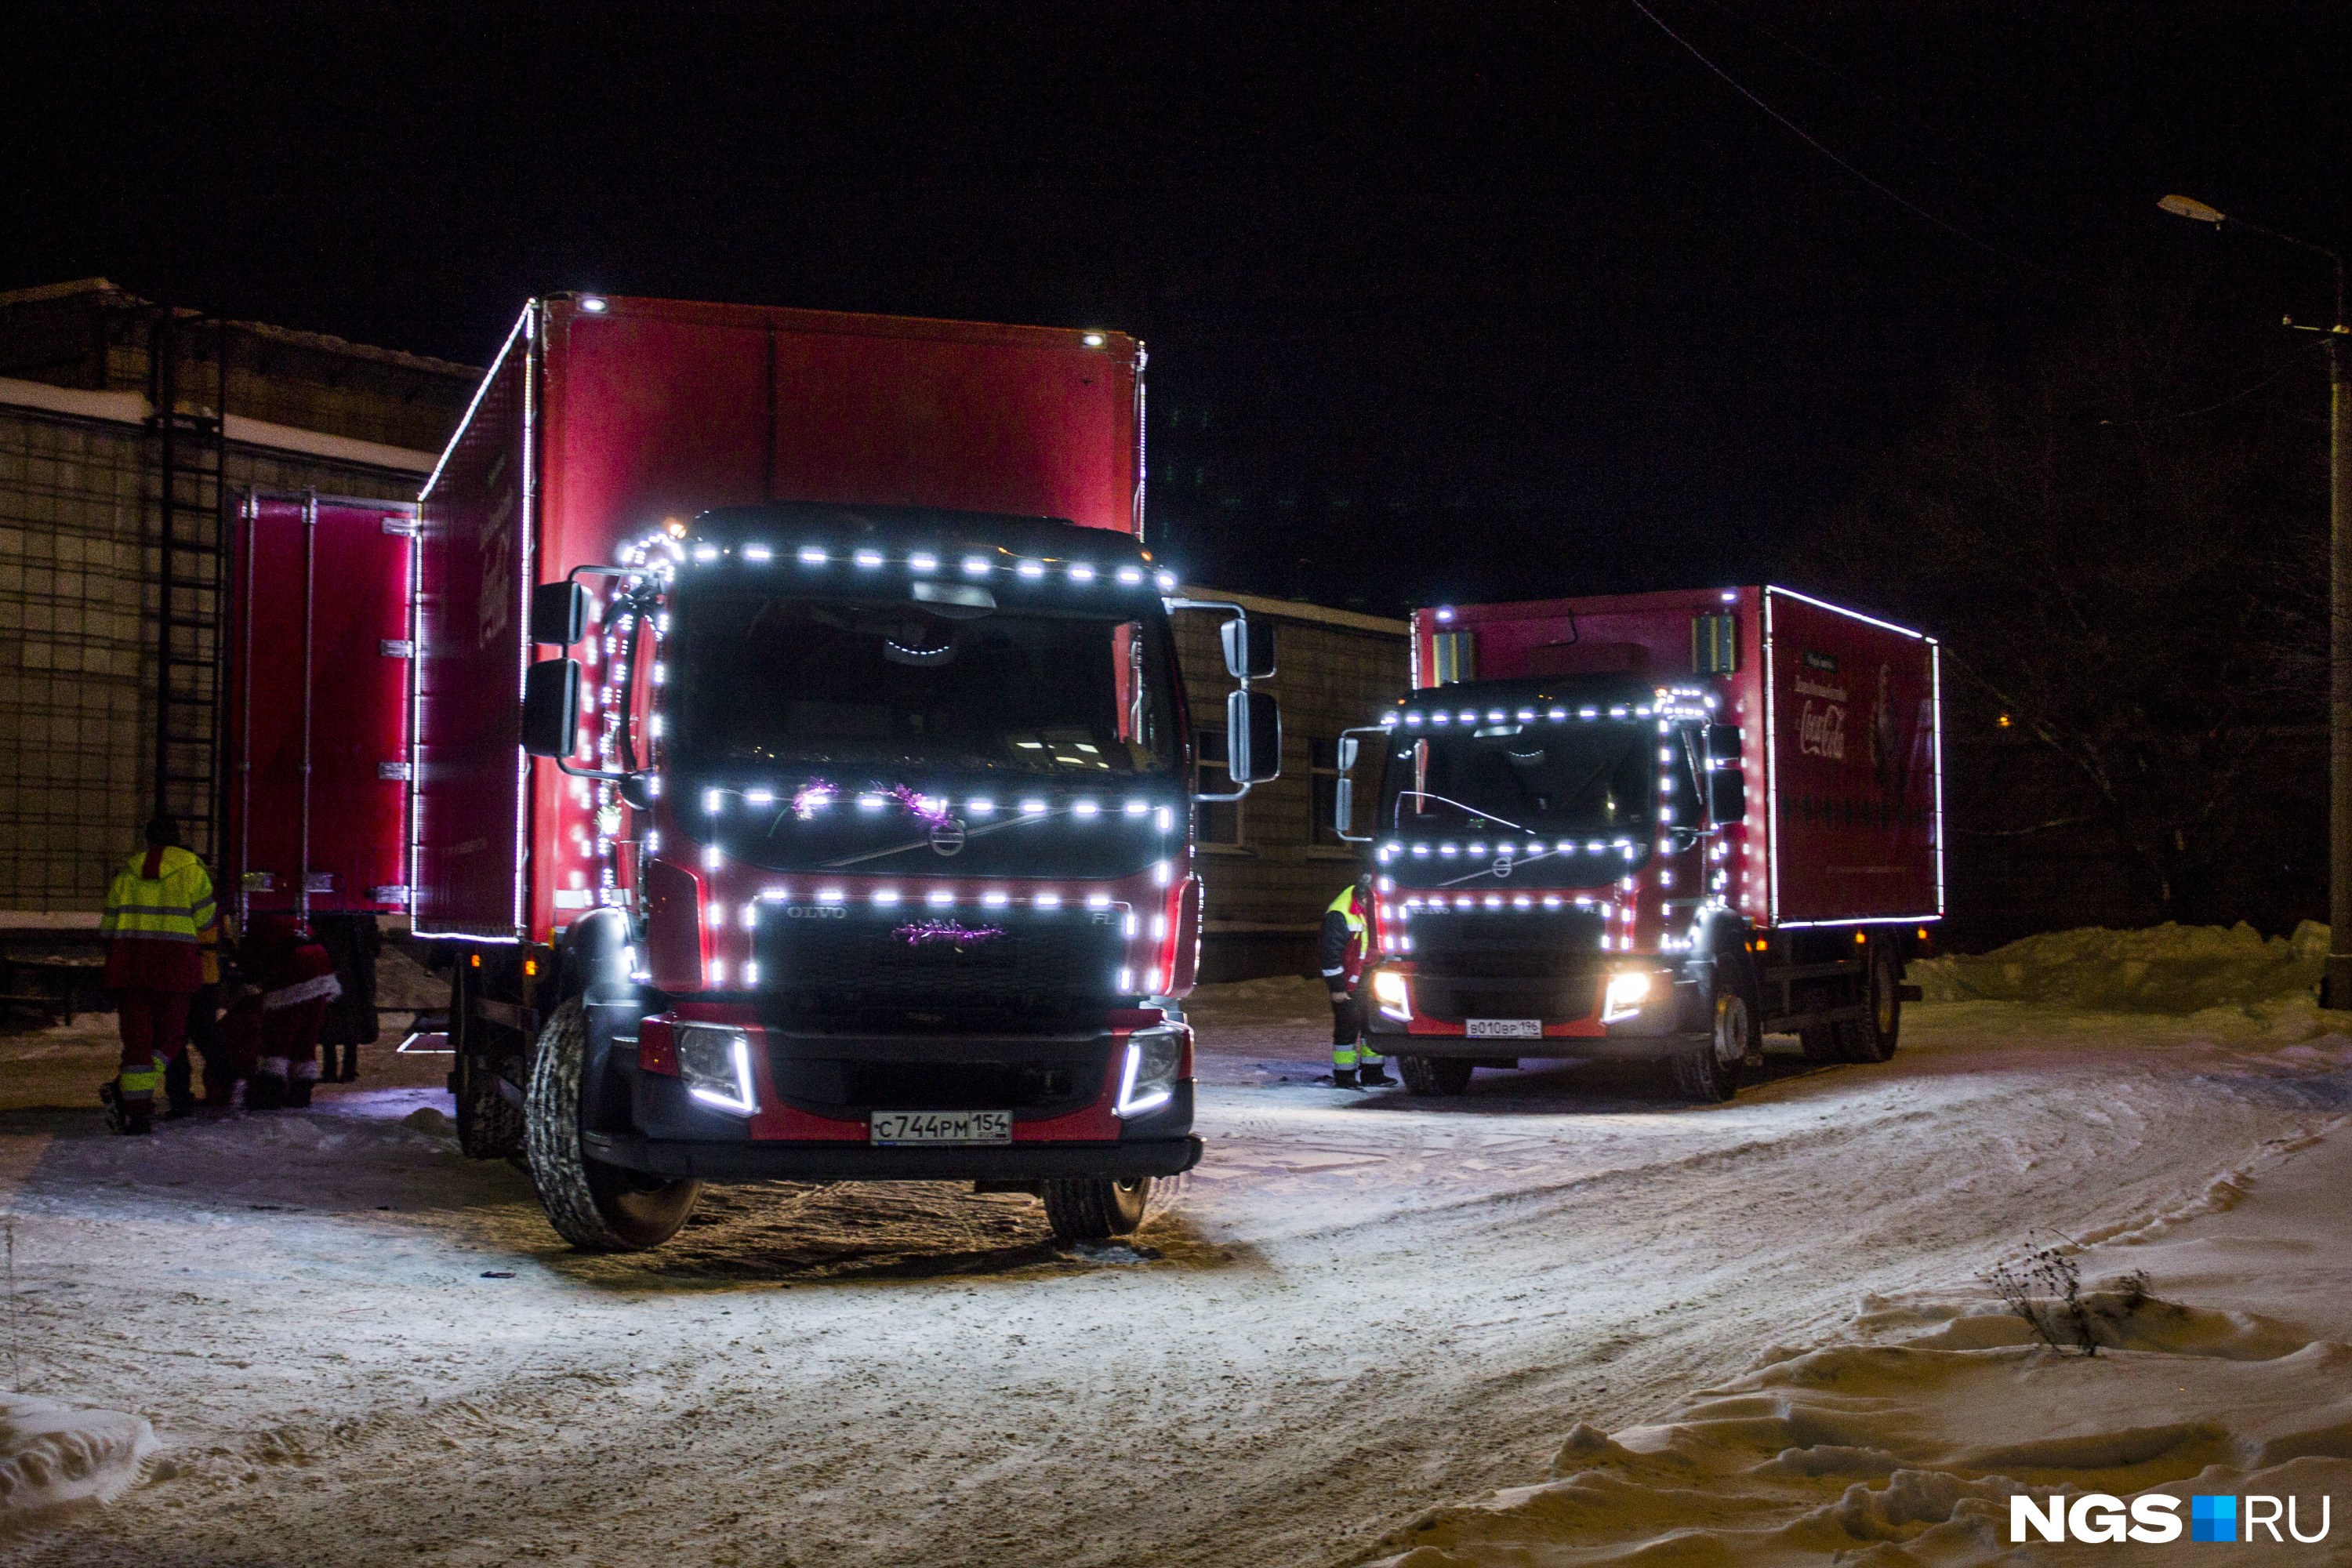 Новогодние грузовики были украшены лампочками